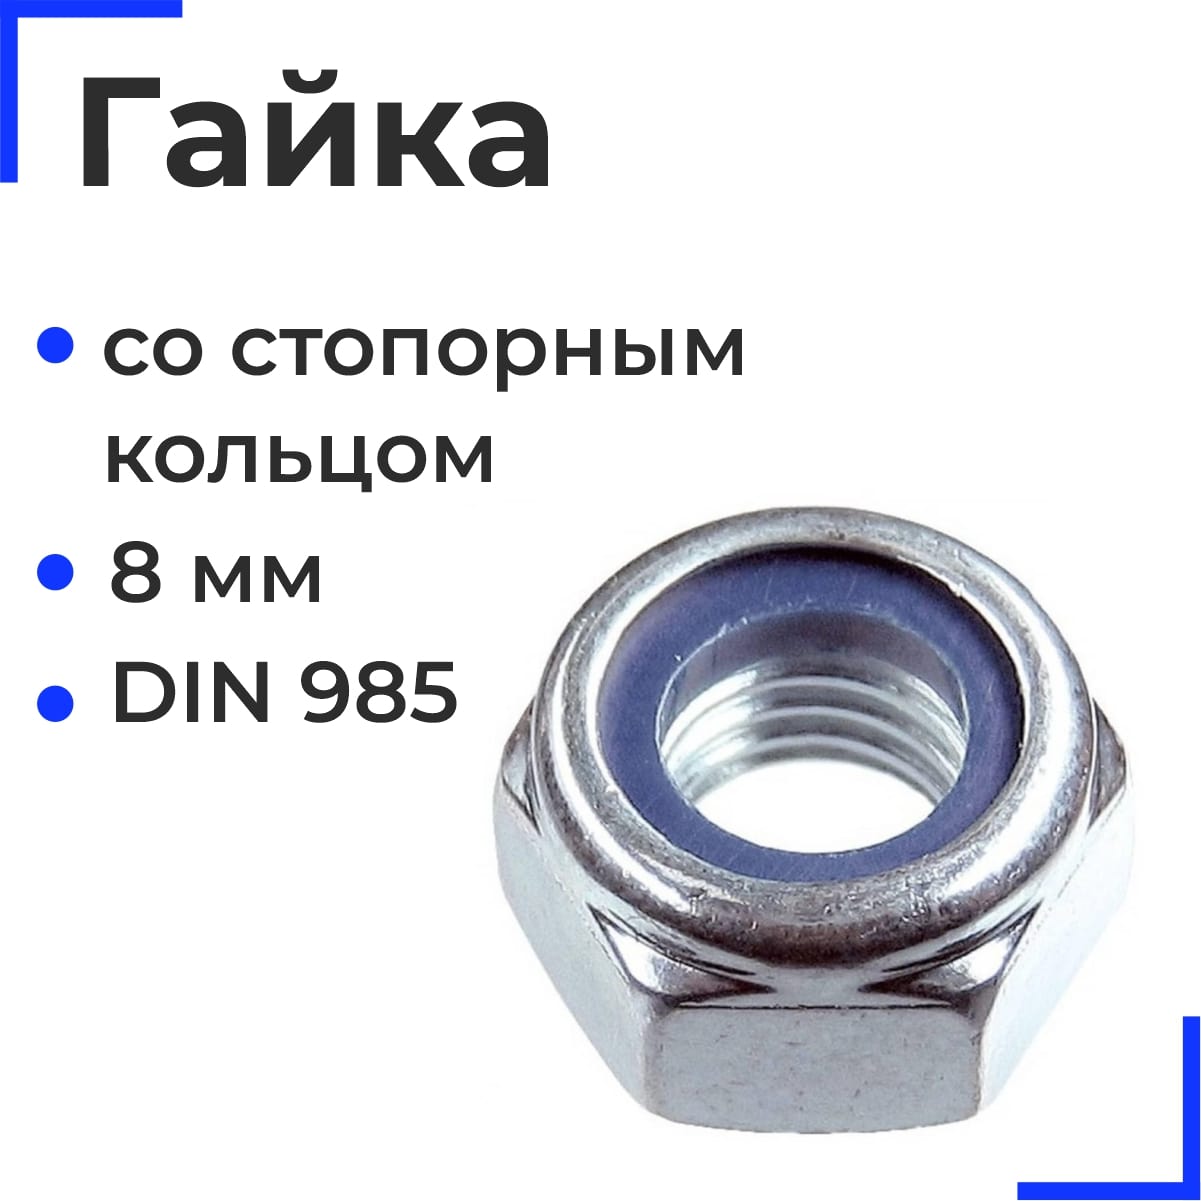 Гайка шестигранная со стопорным кольцом М8 DIN 985